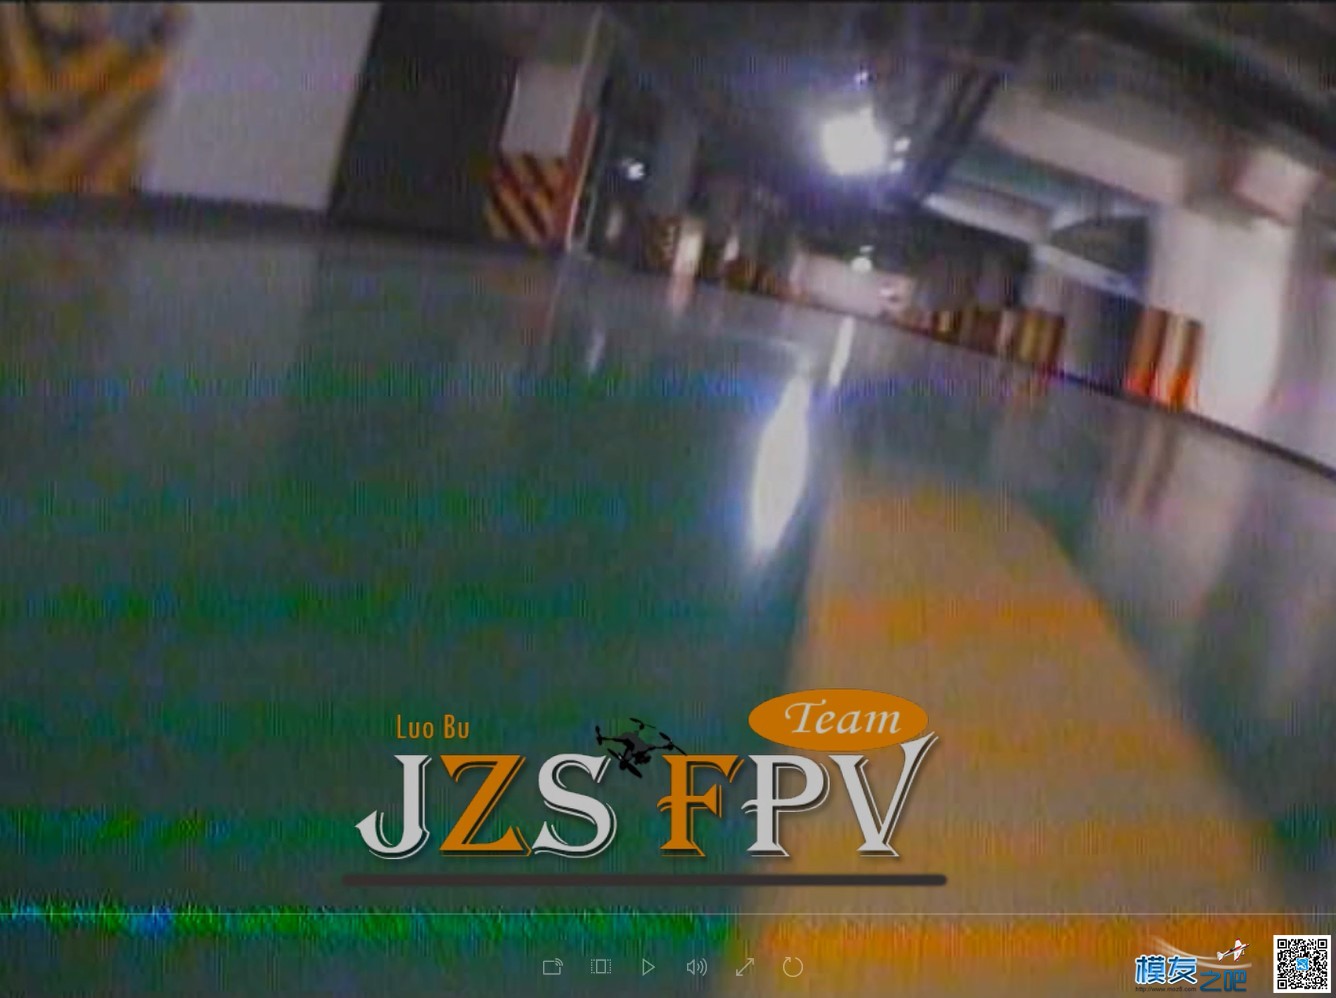 萝卜周日QAV210穿越车库首飞,DVR录制（JZS FPV） 轰20首飞成功,轰20首飞图,首飞什么意思,轰20首飞 作者:义乌大萝卜 6407 